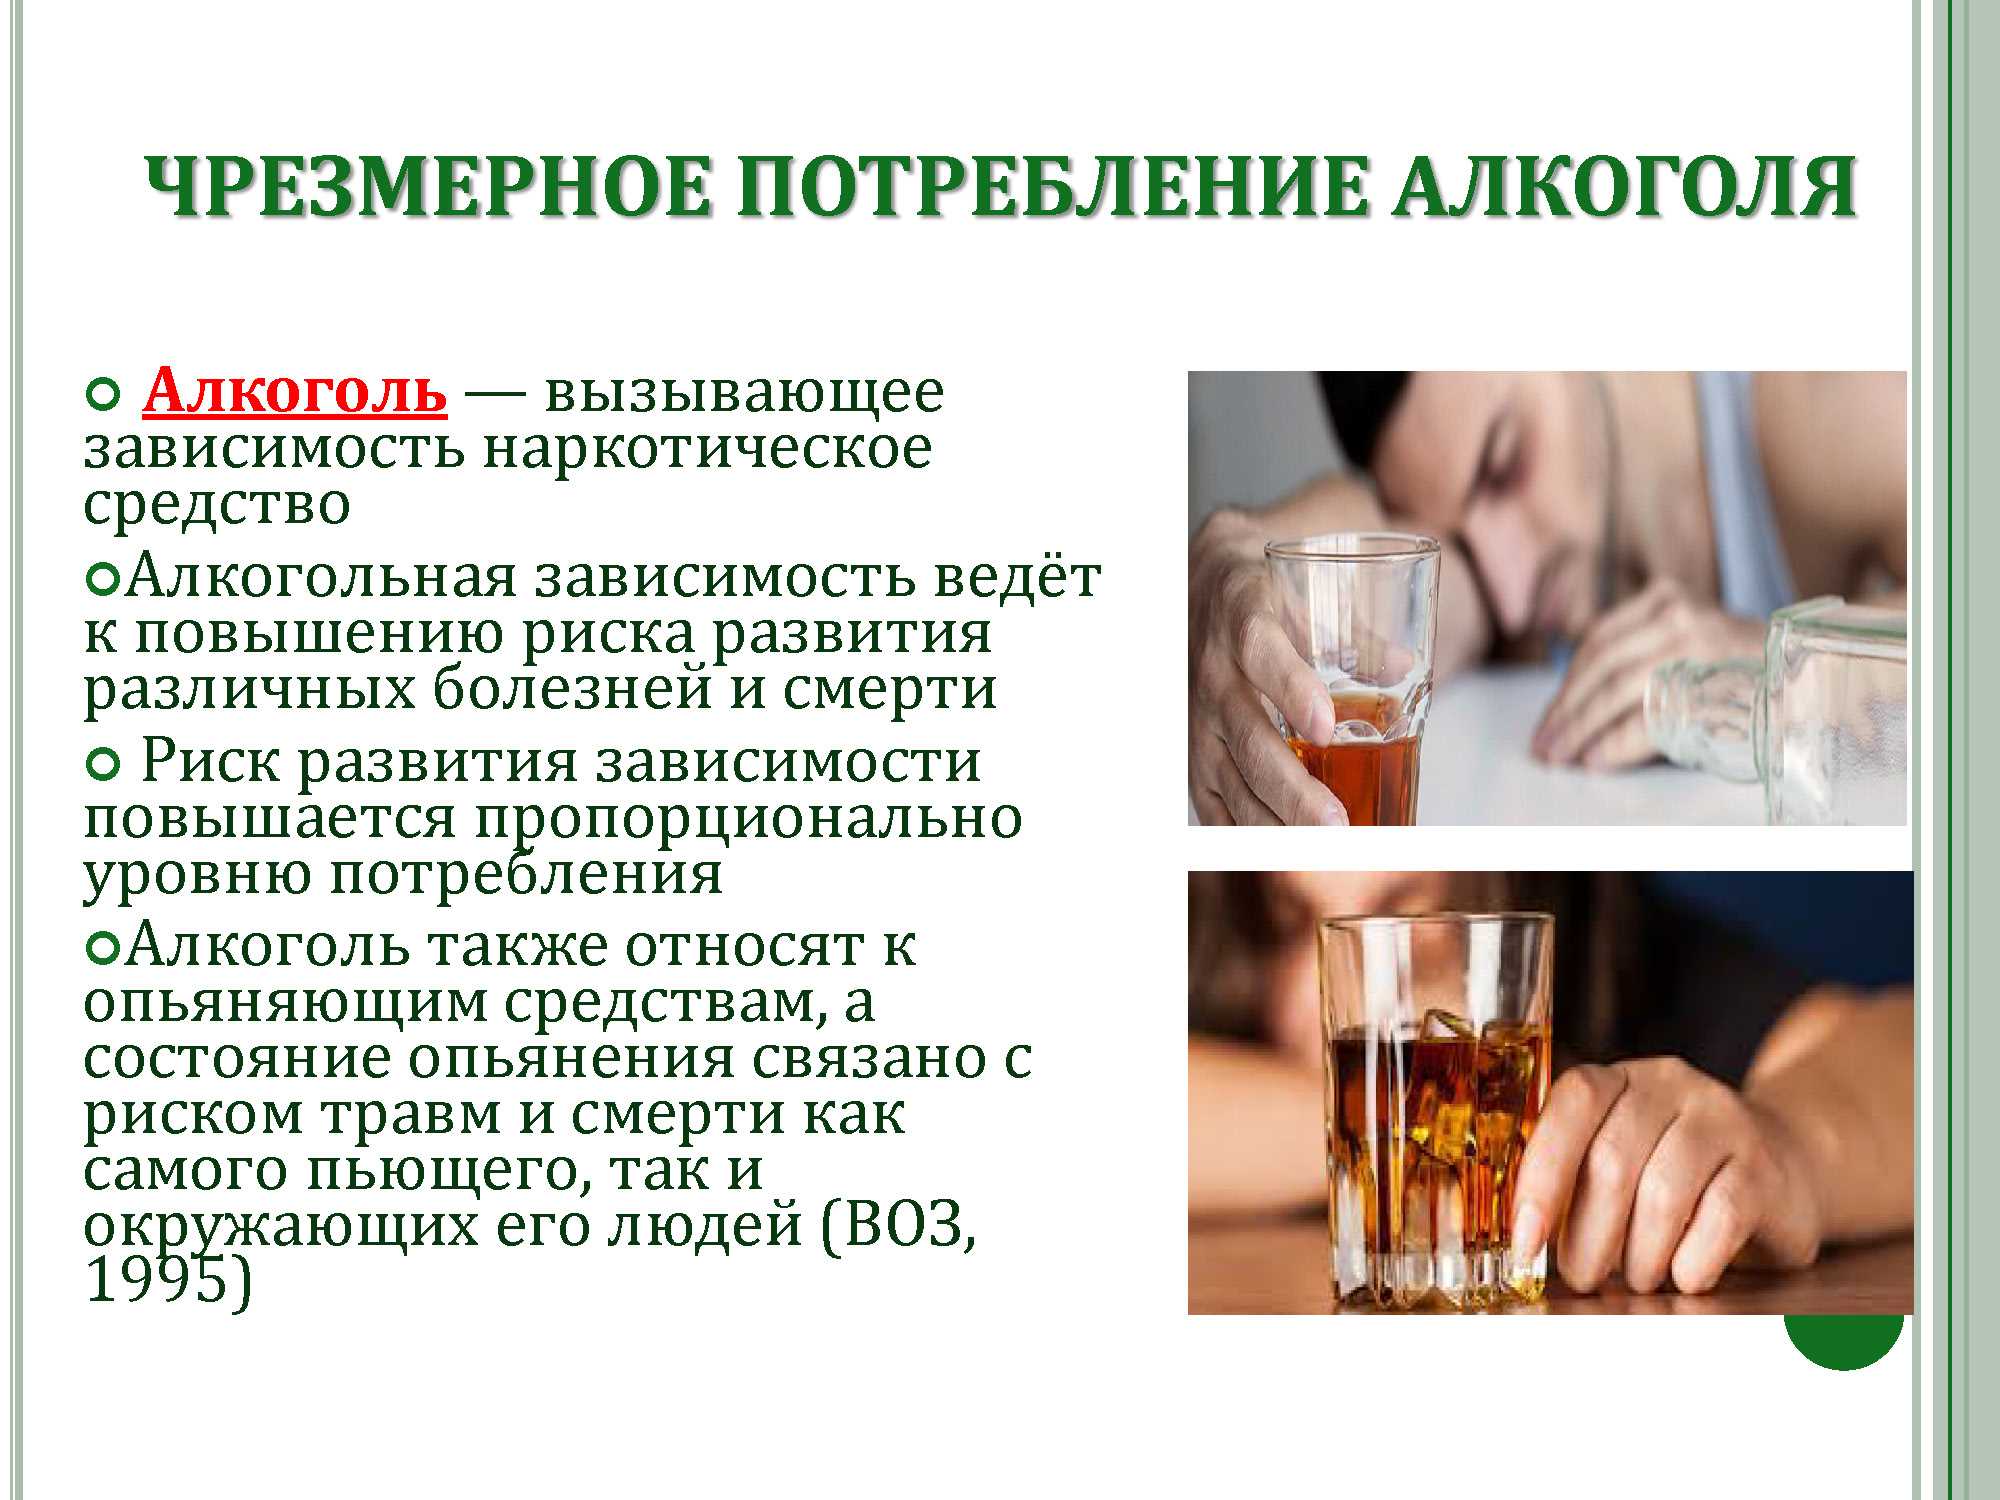 Топ способов борьбы с пьянством: травы от алкоголизма